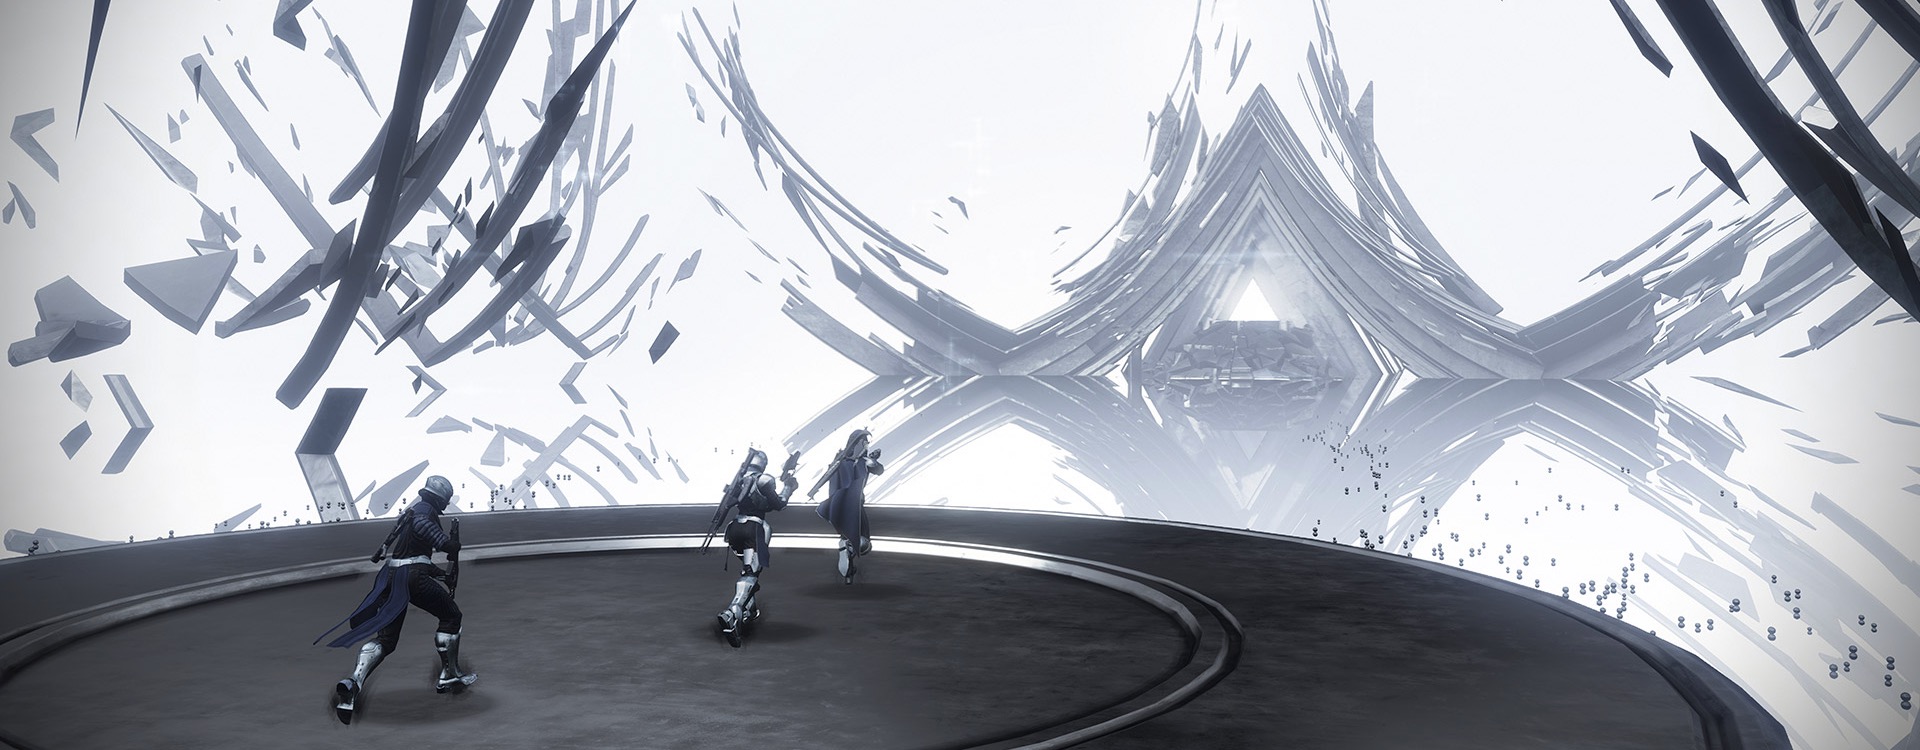 Destiny 2: Erkundung der Korridore der Zeit – So funktioniert das neue Puzzle